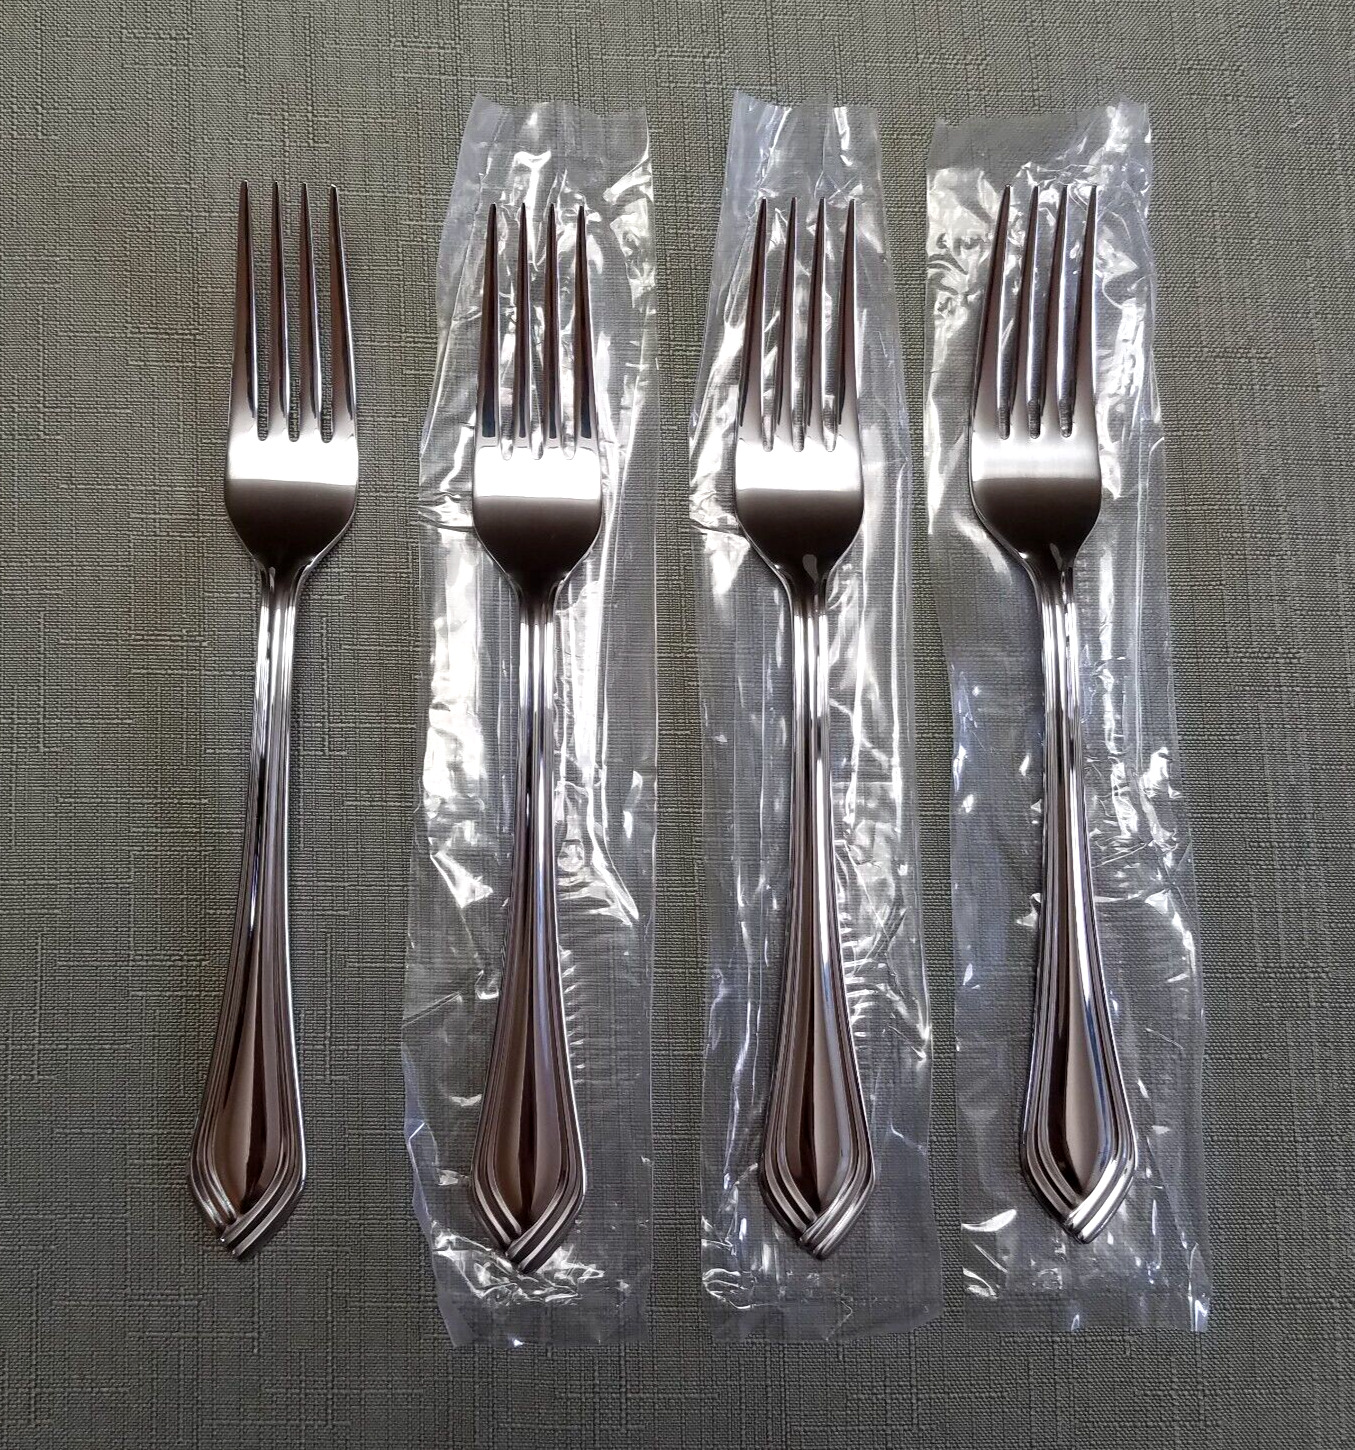 NEW 4- Lenox BARTLETT Stainless Steel Dinner Forks Set of 4 New